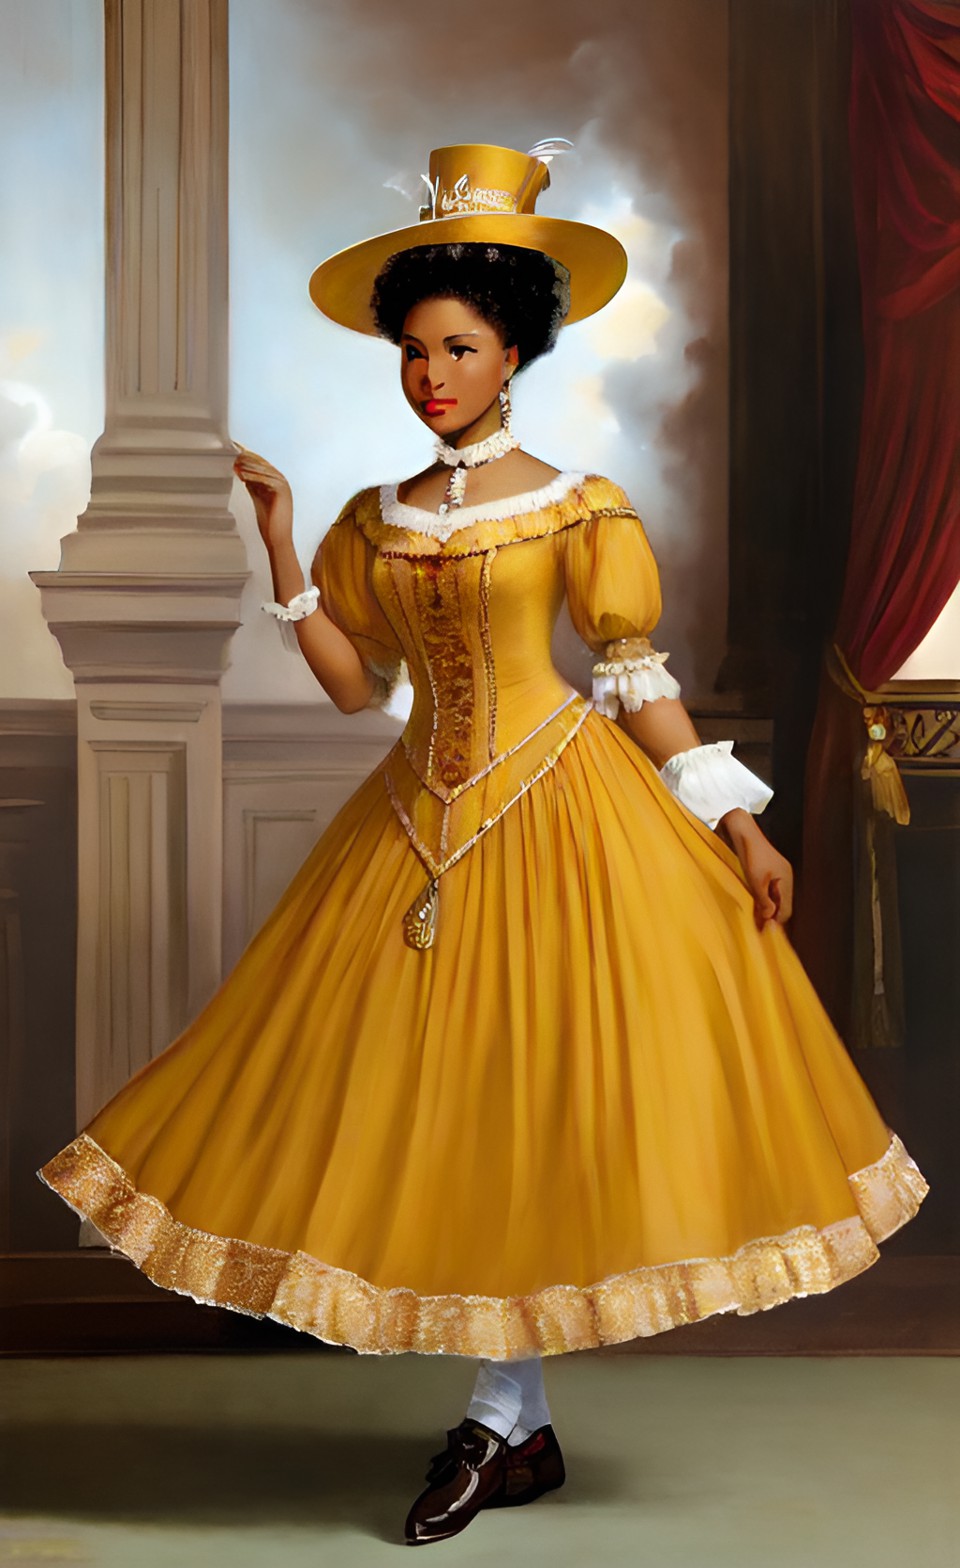 Mixed-race women in fine Shakespearean era party dresses Mixra226